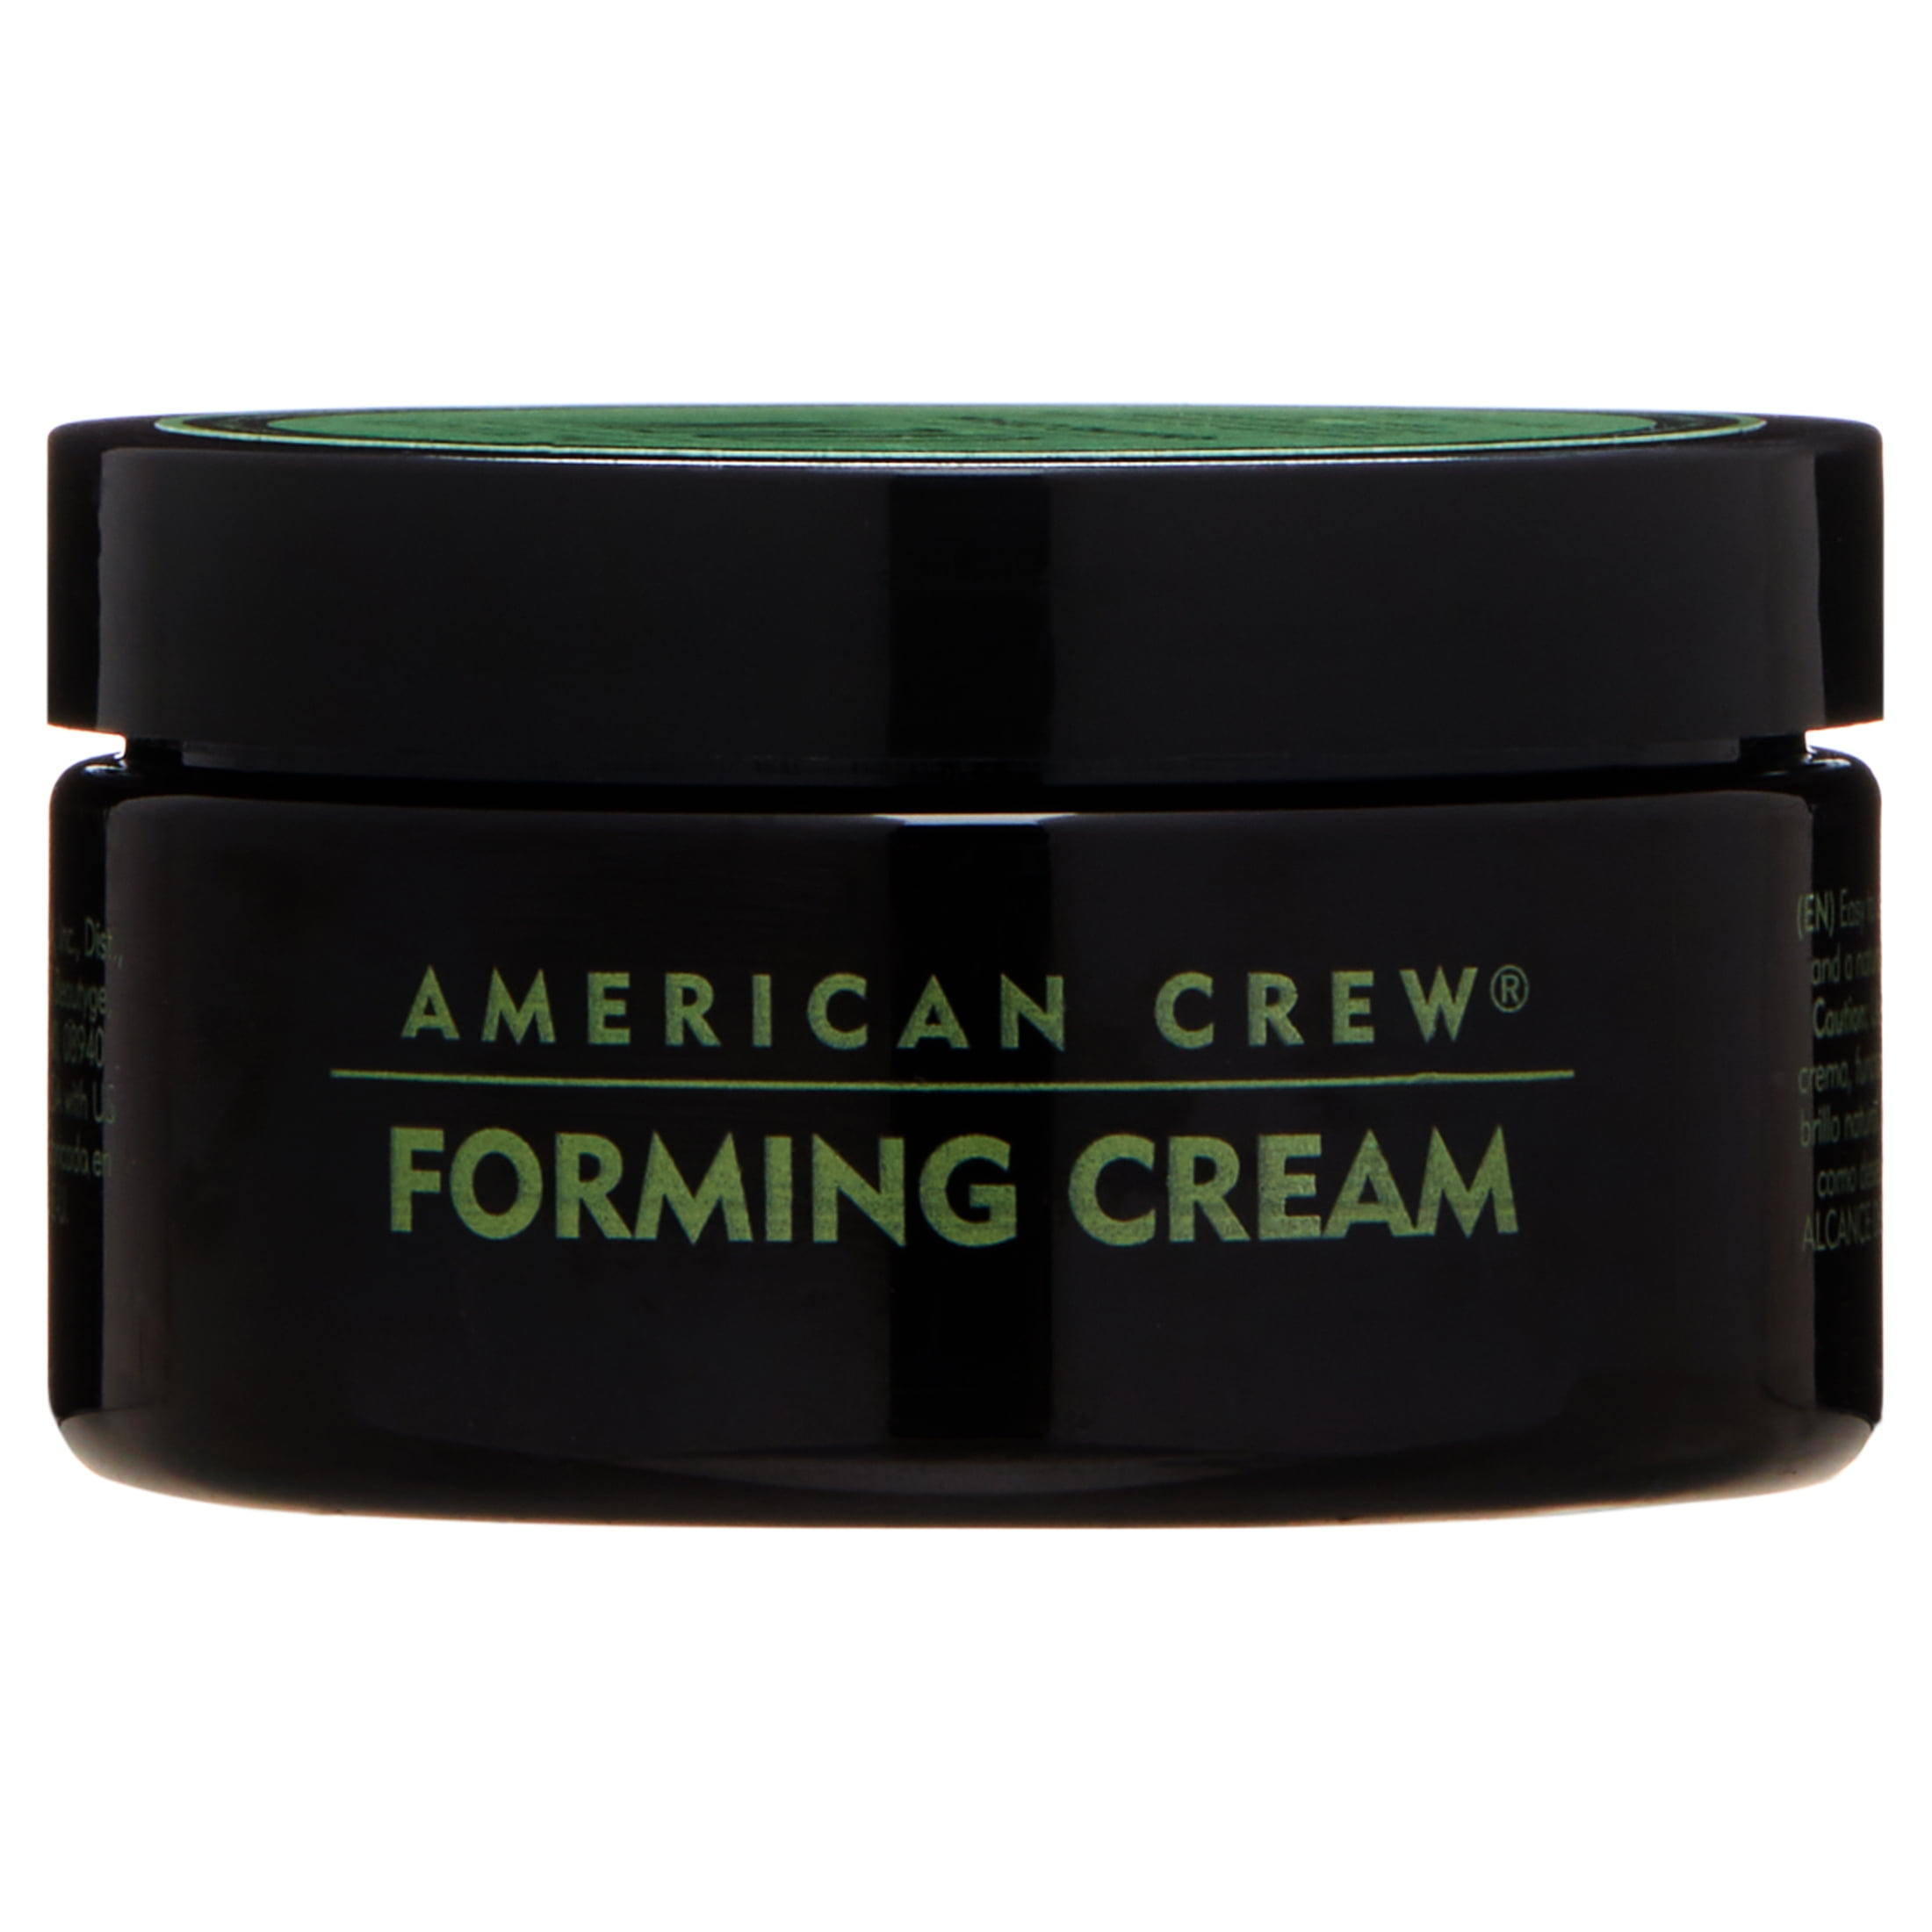 American Crew Forming Medium Hold Cream, 3 oz